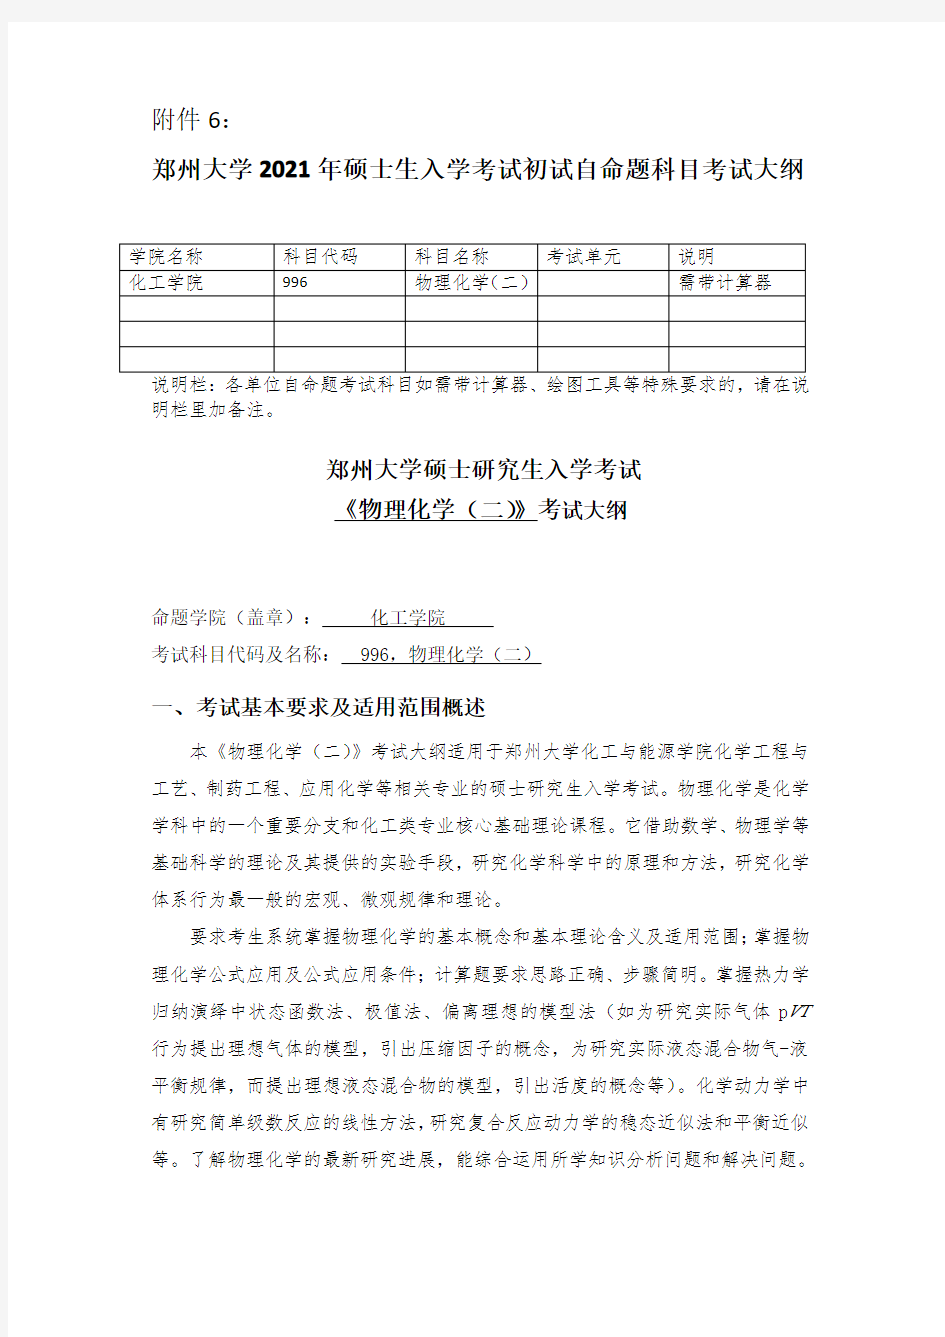 郑州大学2021考研自命题科目考试大纲-996物理化学(二)